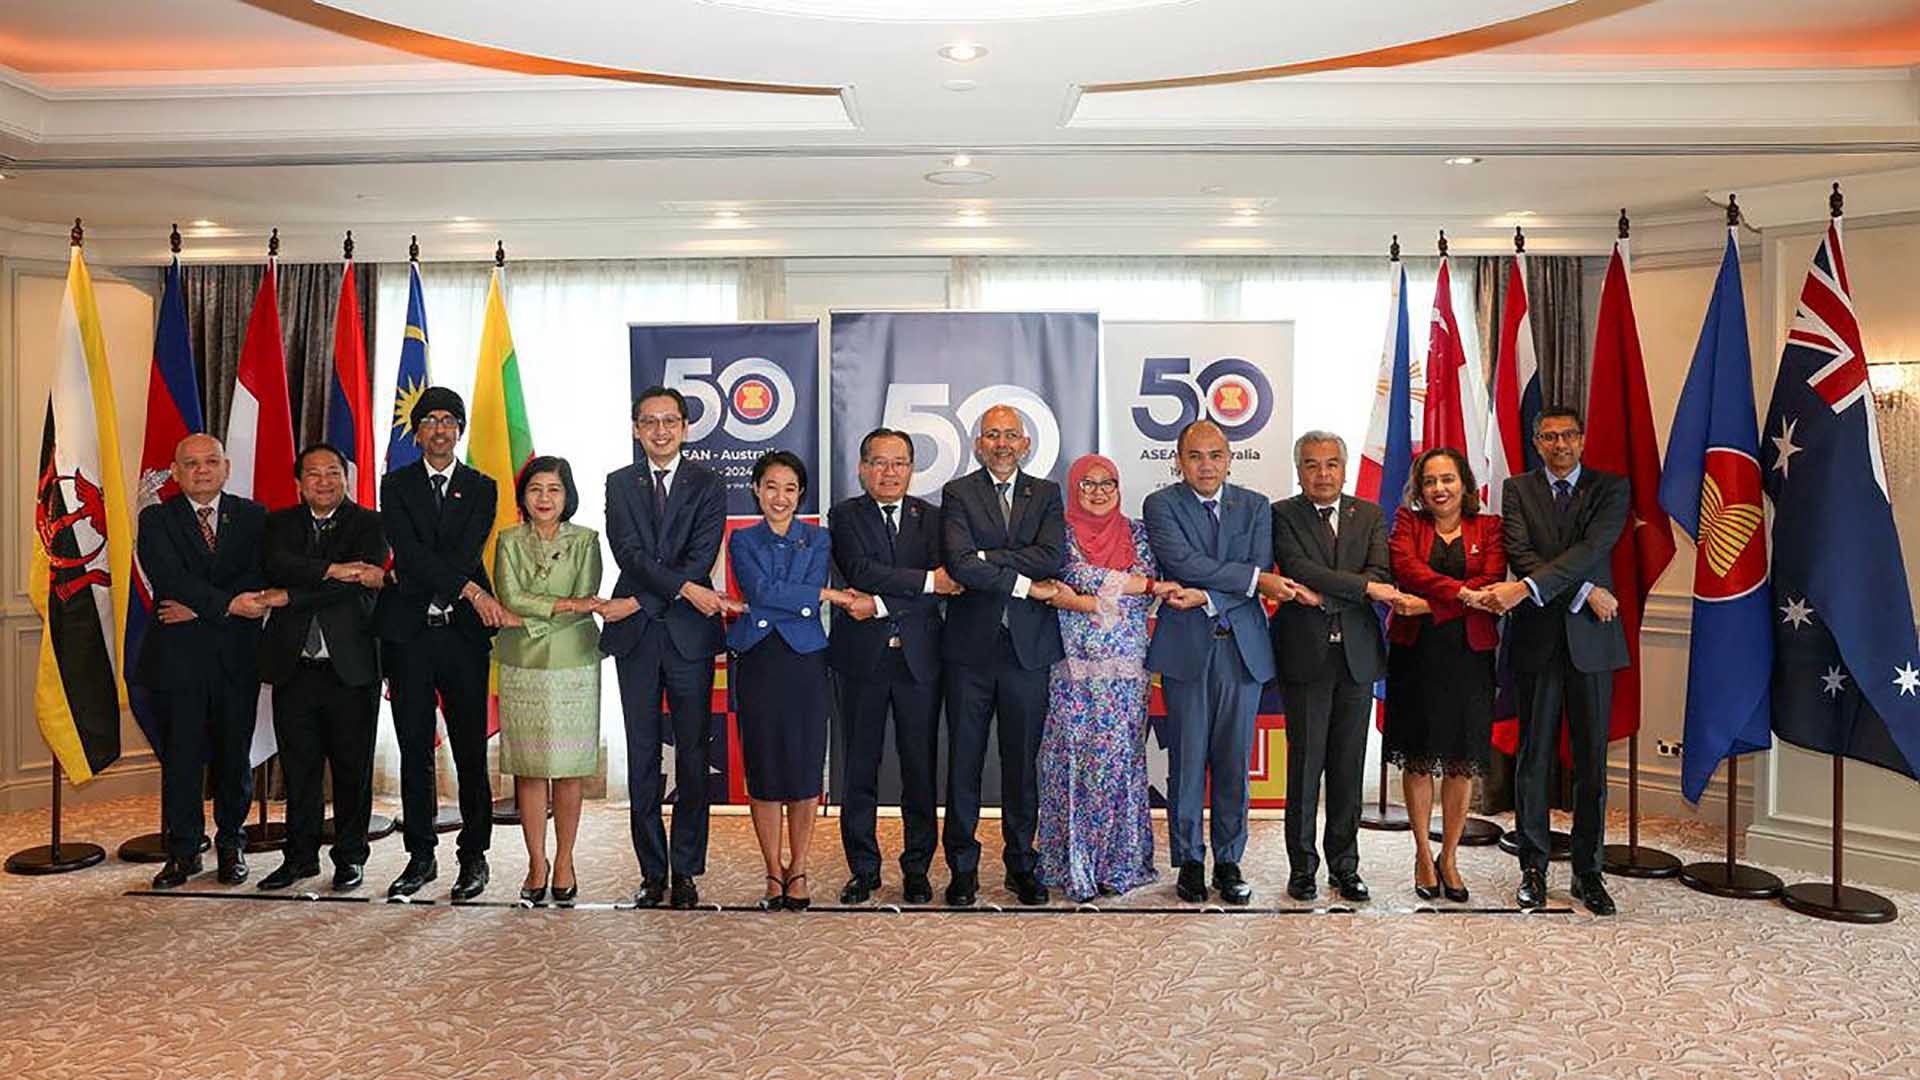 Thứ trưởng Ngoại giao Đỗ Hùng Việt tham dự Diễn đàn ASEAN-Australia lần thứ 36